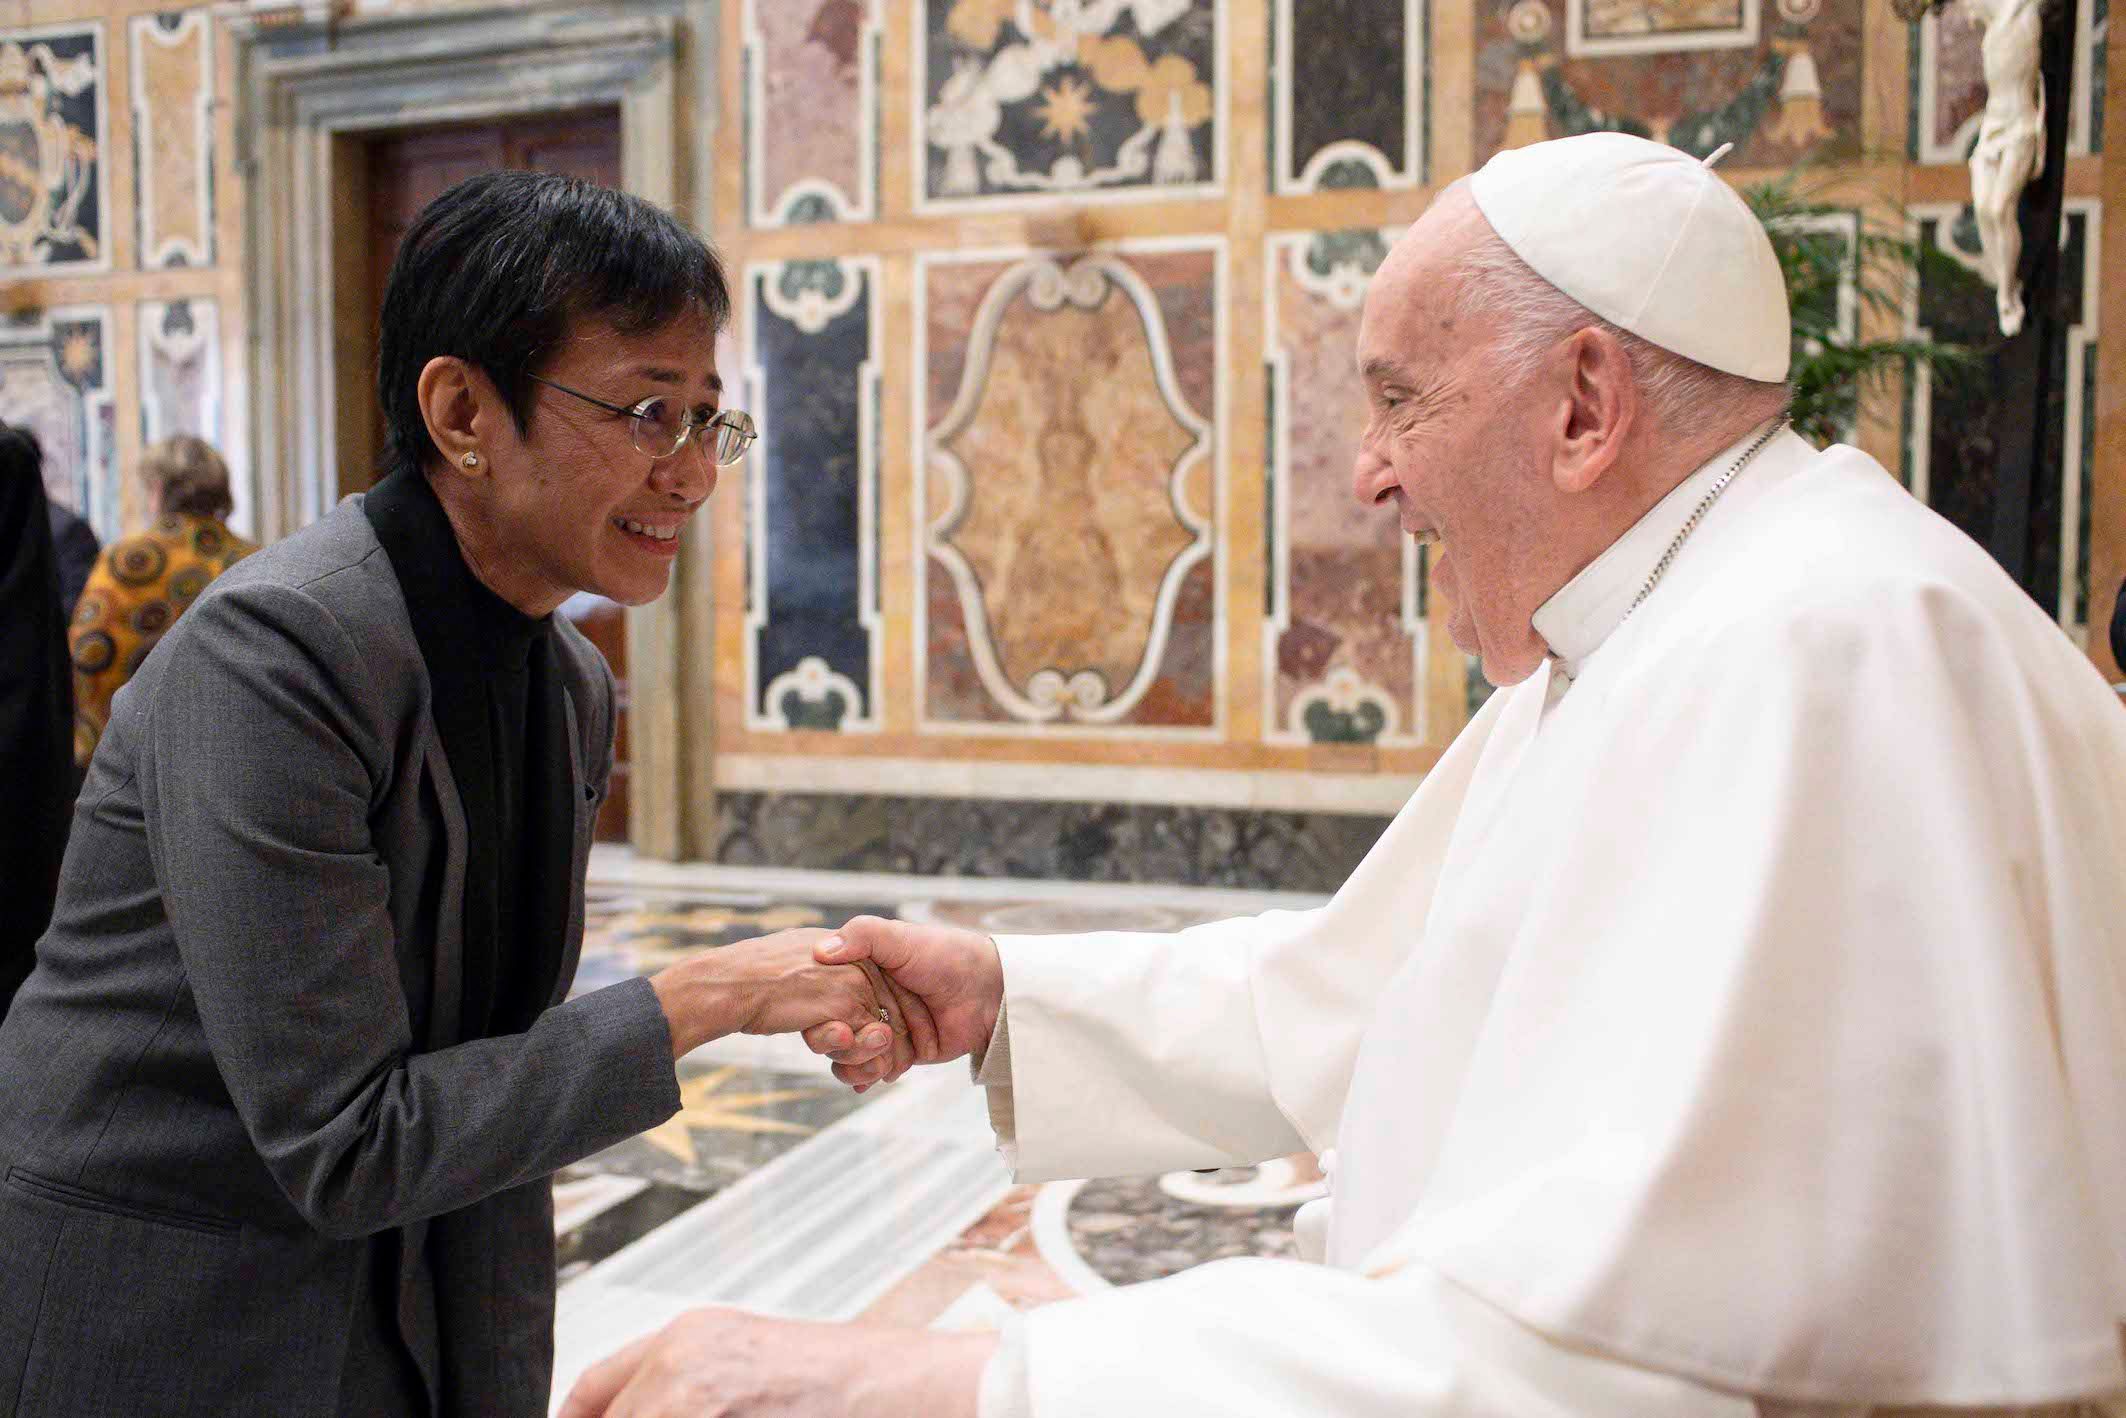 Nobel laureates meet Pope Francis, seek help to end war and build peace